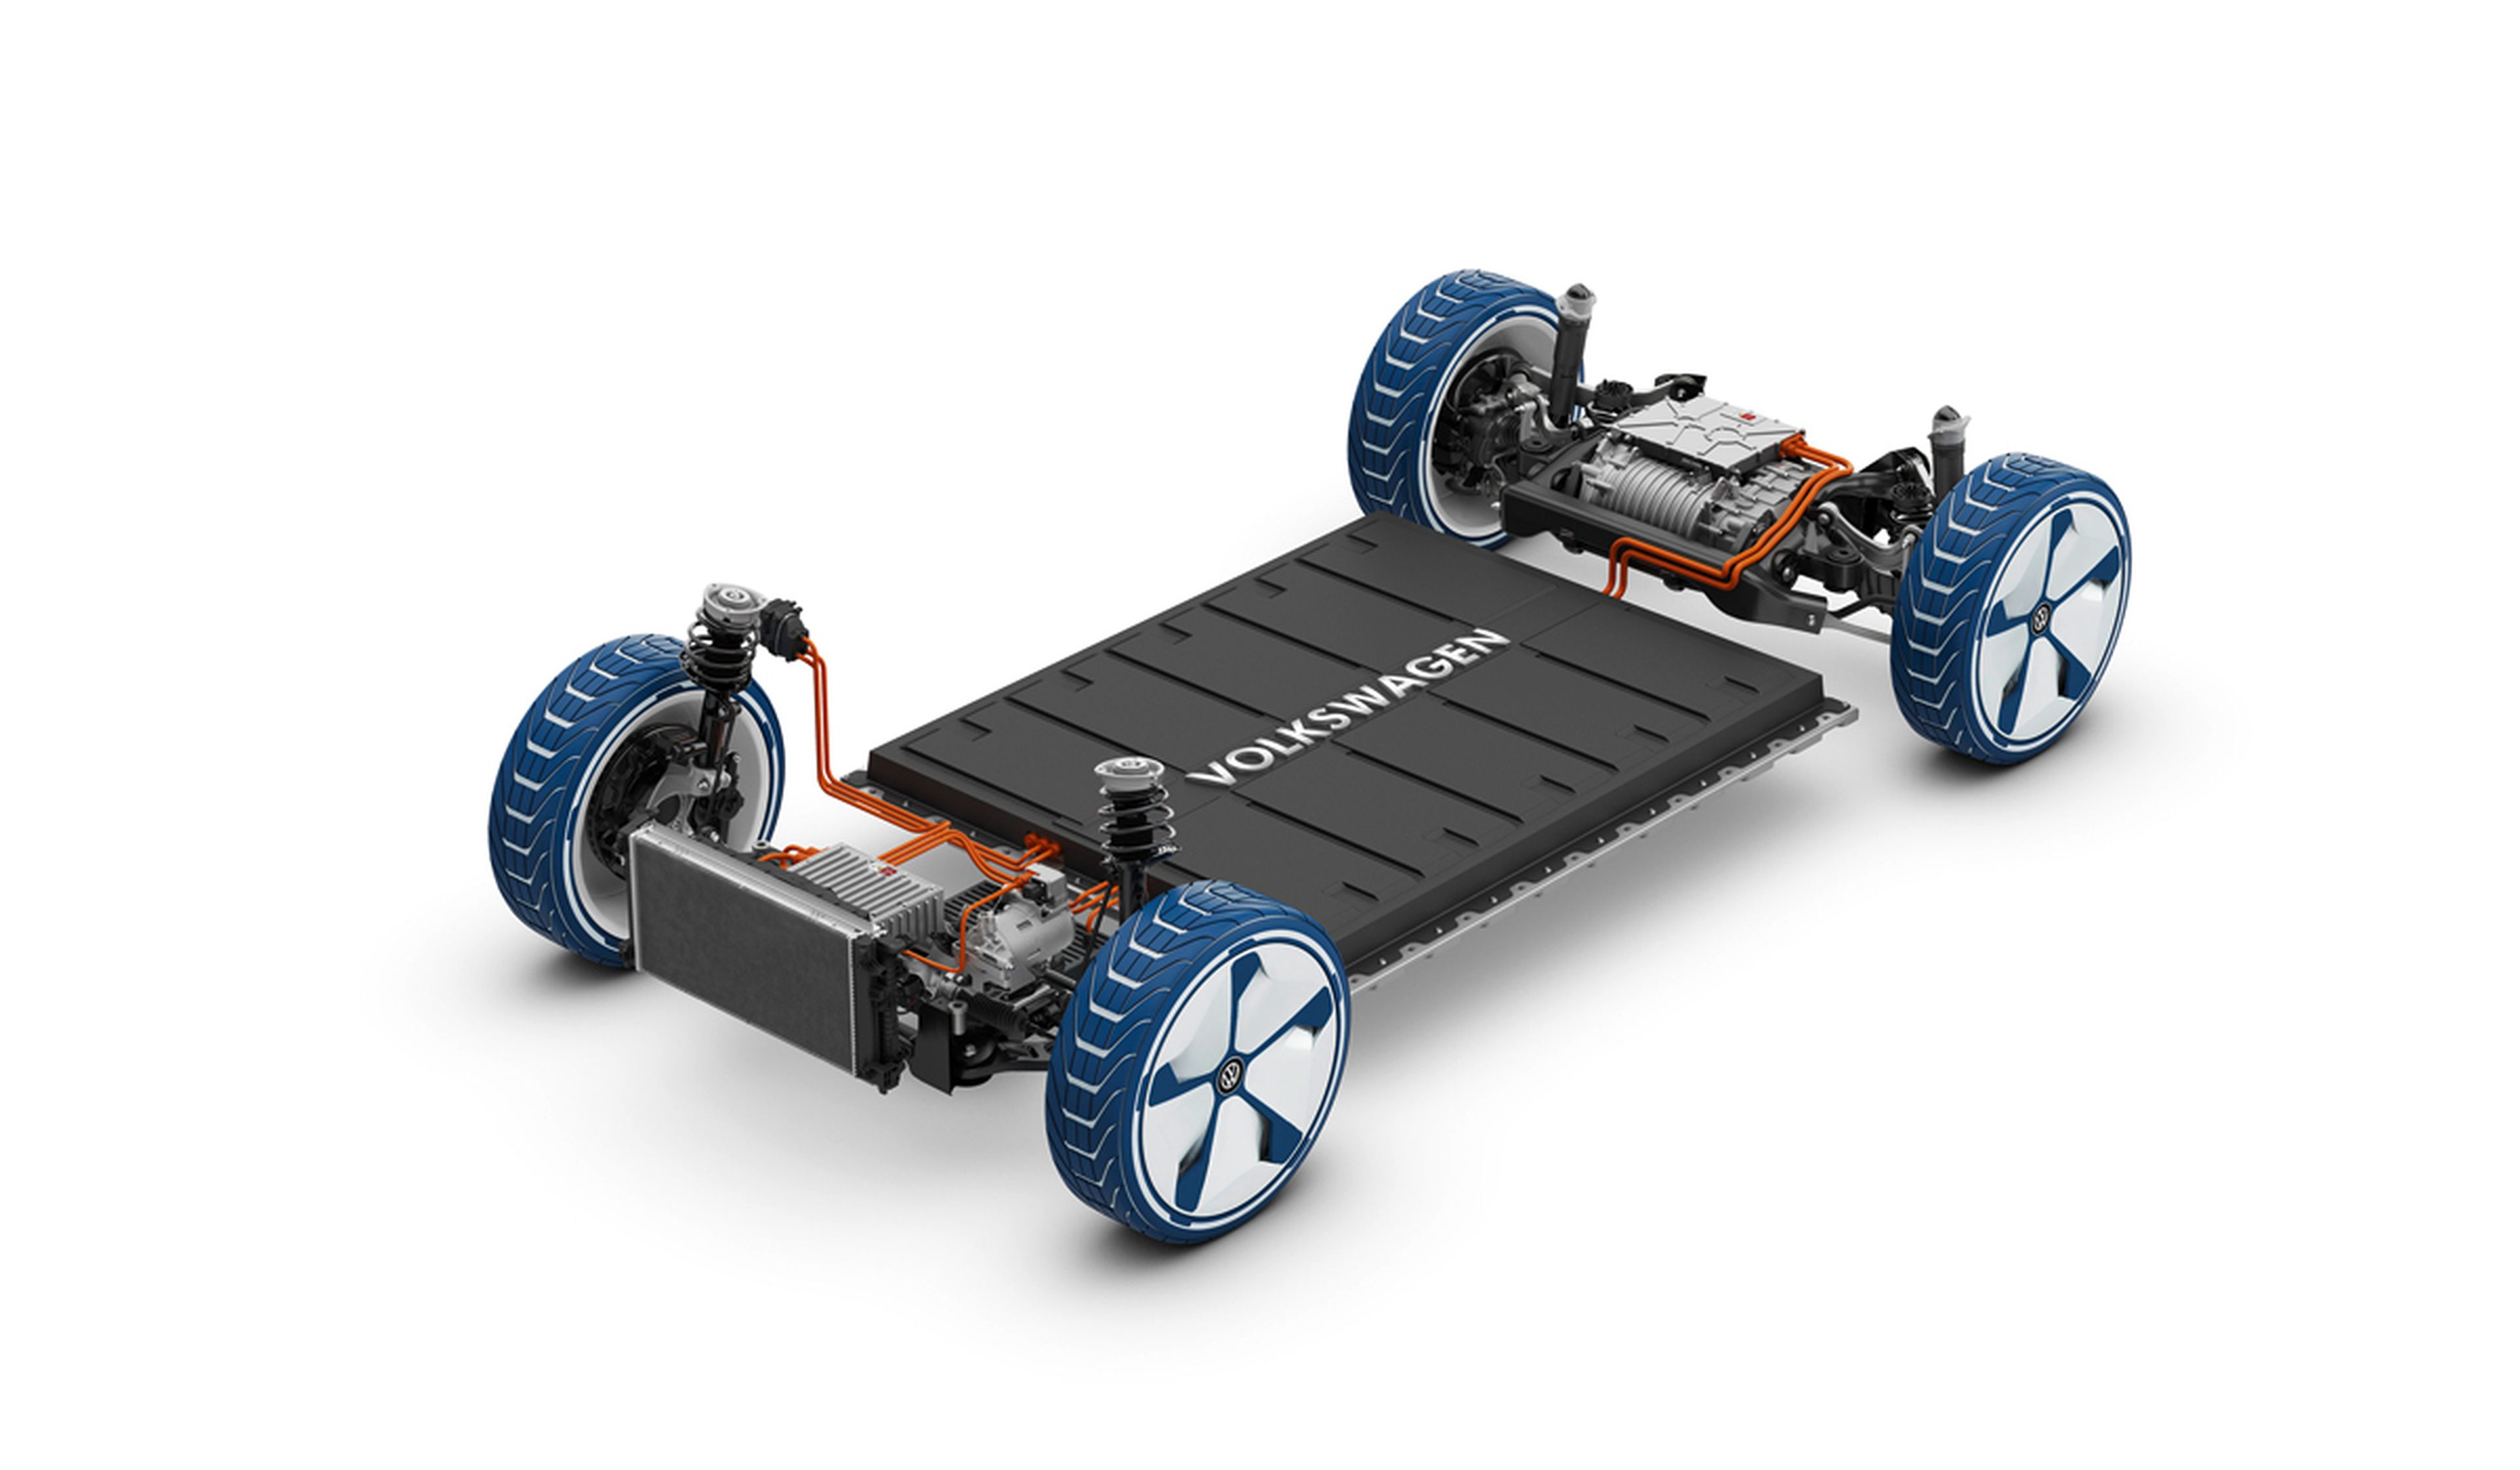 A la joint-venture con QuantumScape VW aportará el ordenador cuántico con el que ya estaba desarrollando baterías.